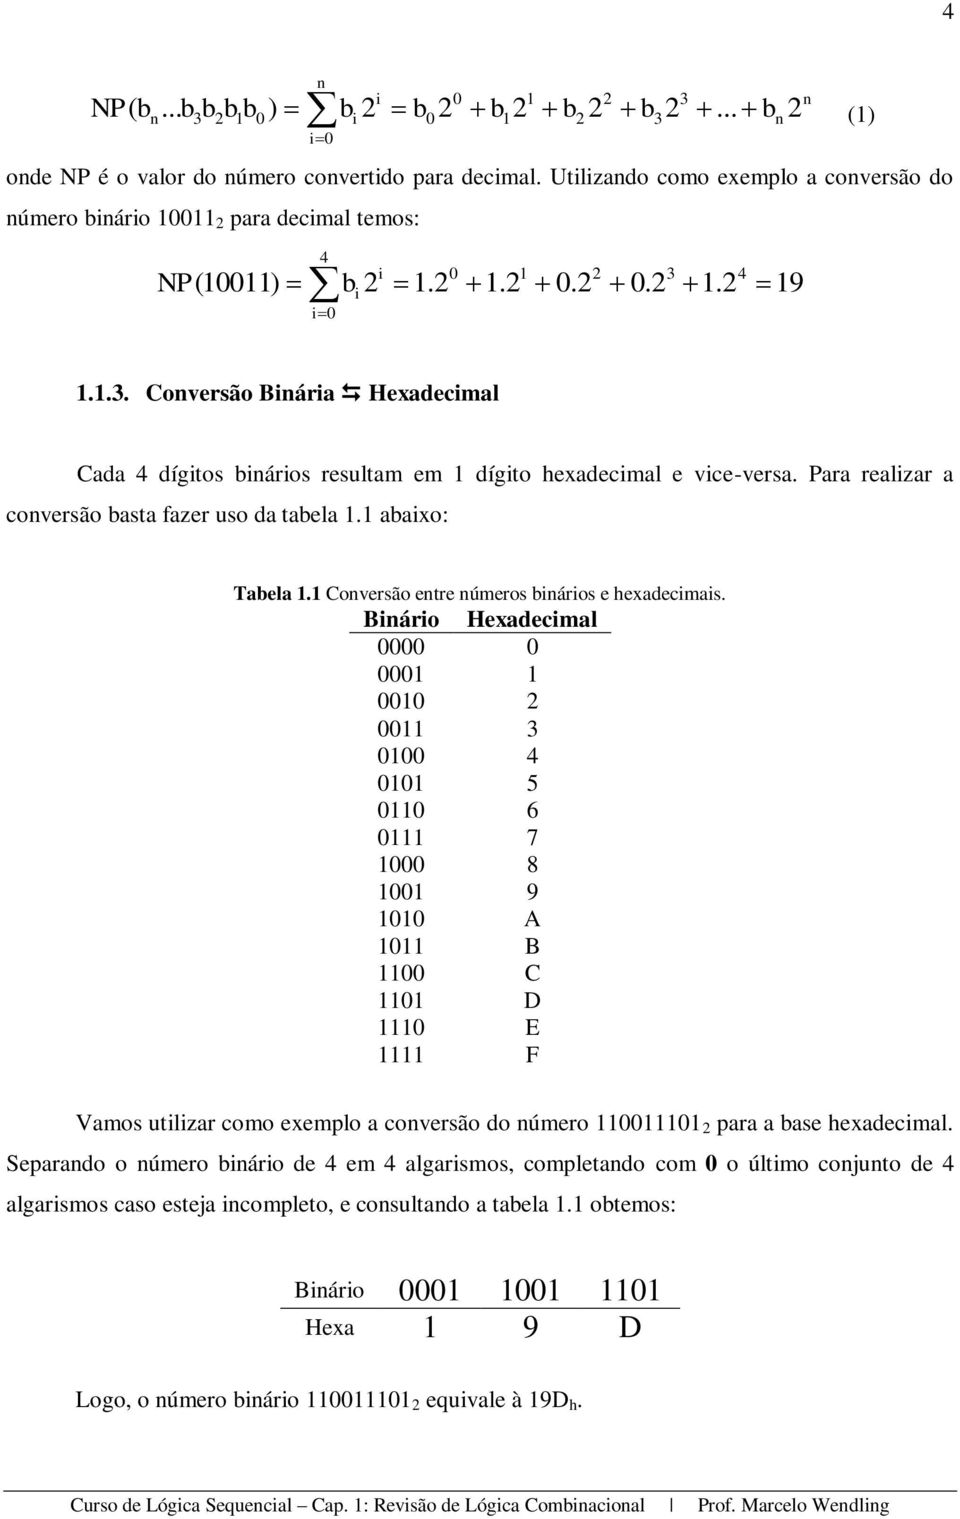 1.2 4 19 1.1.3. Conversão Binária Hexadecimal Cada 4 dígitos binários resultam em 1 dígito hexadecimal e vice-versa. Para realizar a conversão basta fazer uso da tabela 1.1 abaixo: Tabela 1.